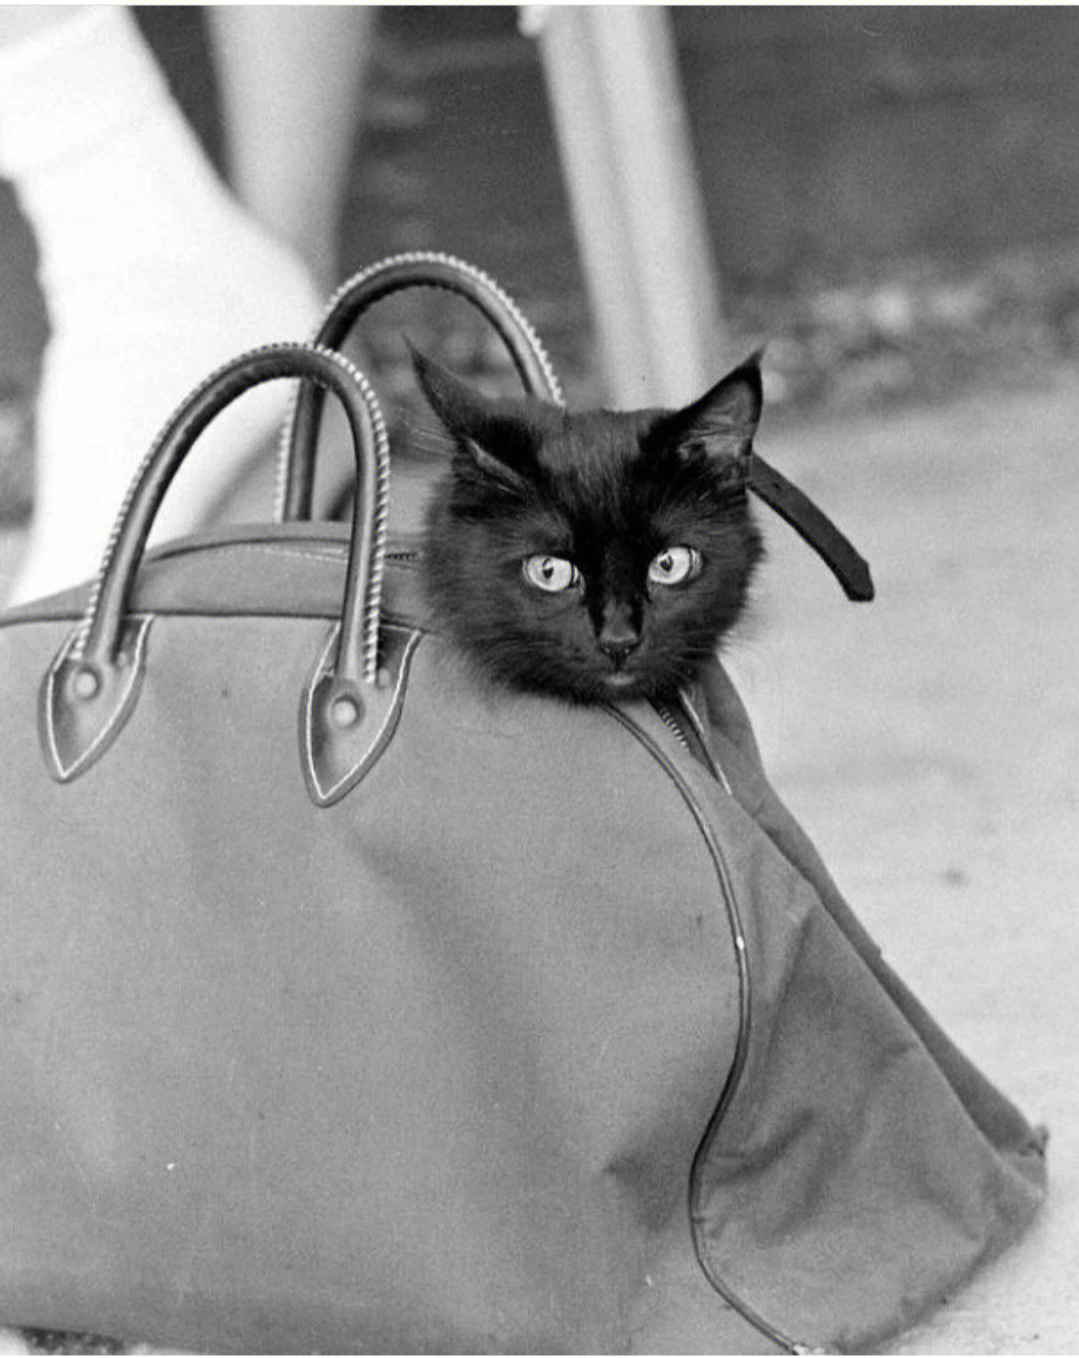 爱伦坡黑猫简介图片